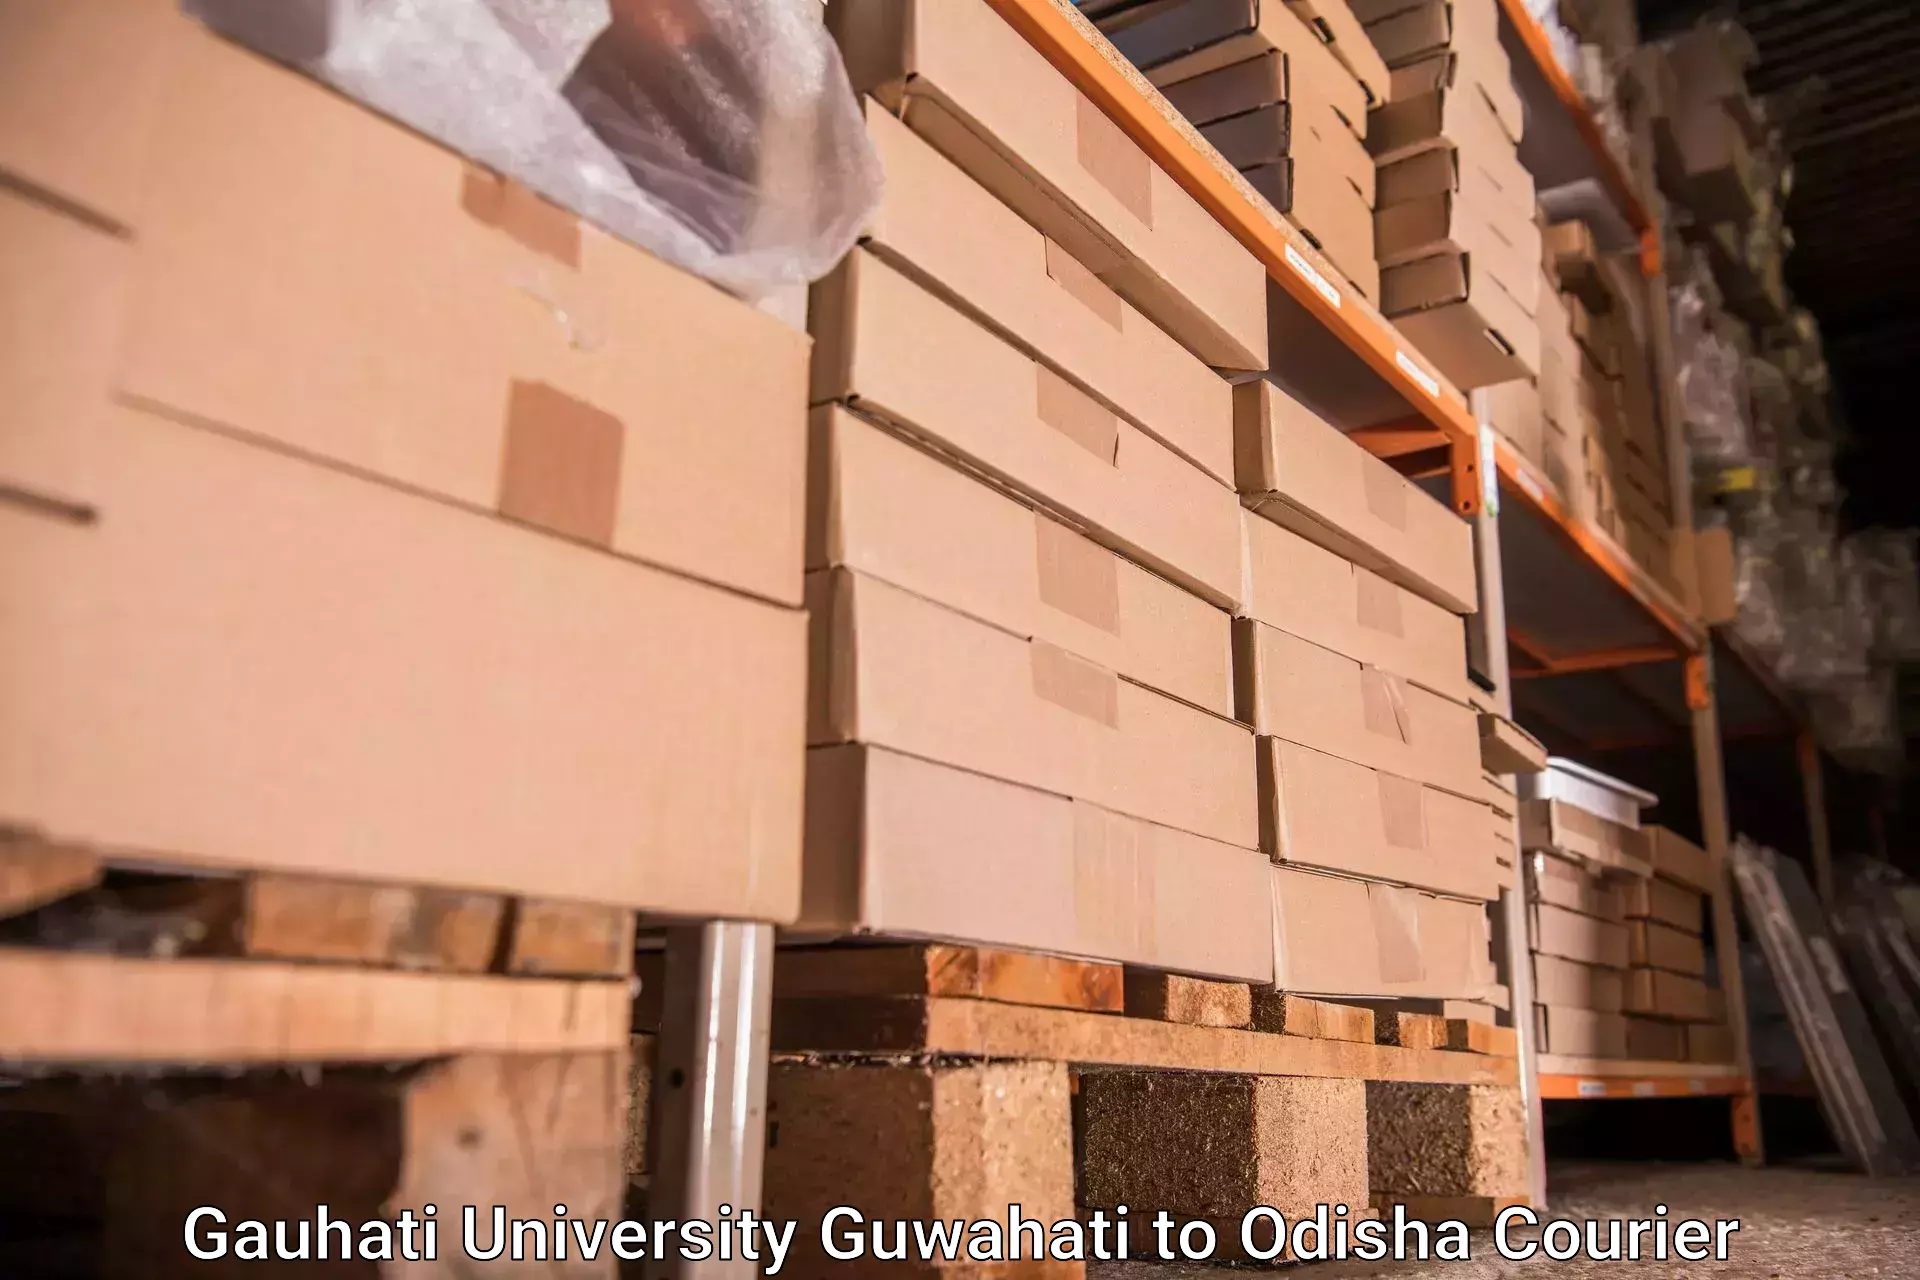 Luggage delivery network Gauhati University Guwahati to Bhubaneswar